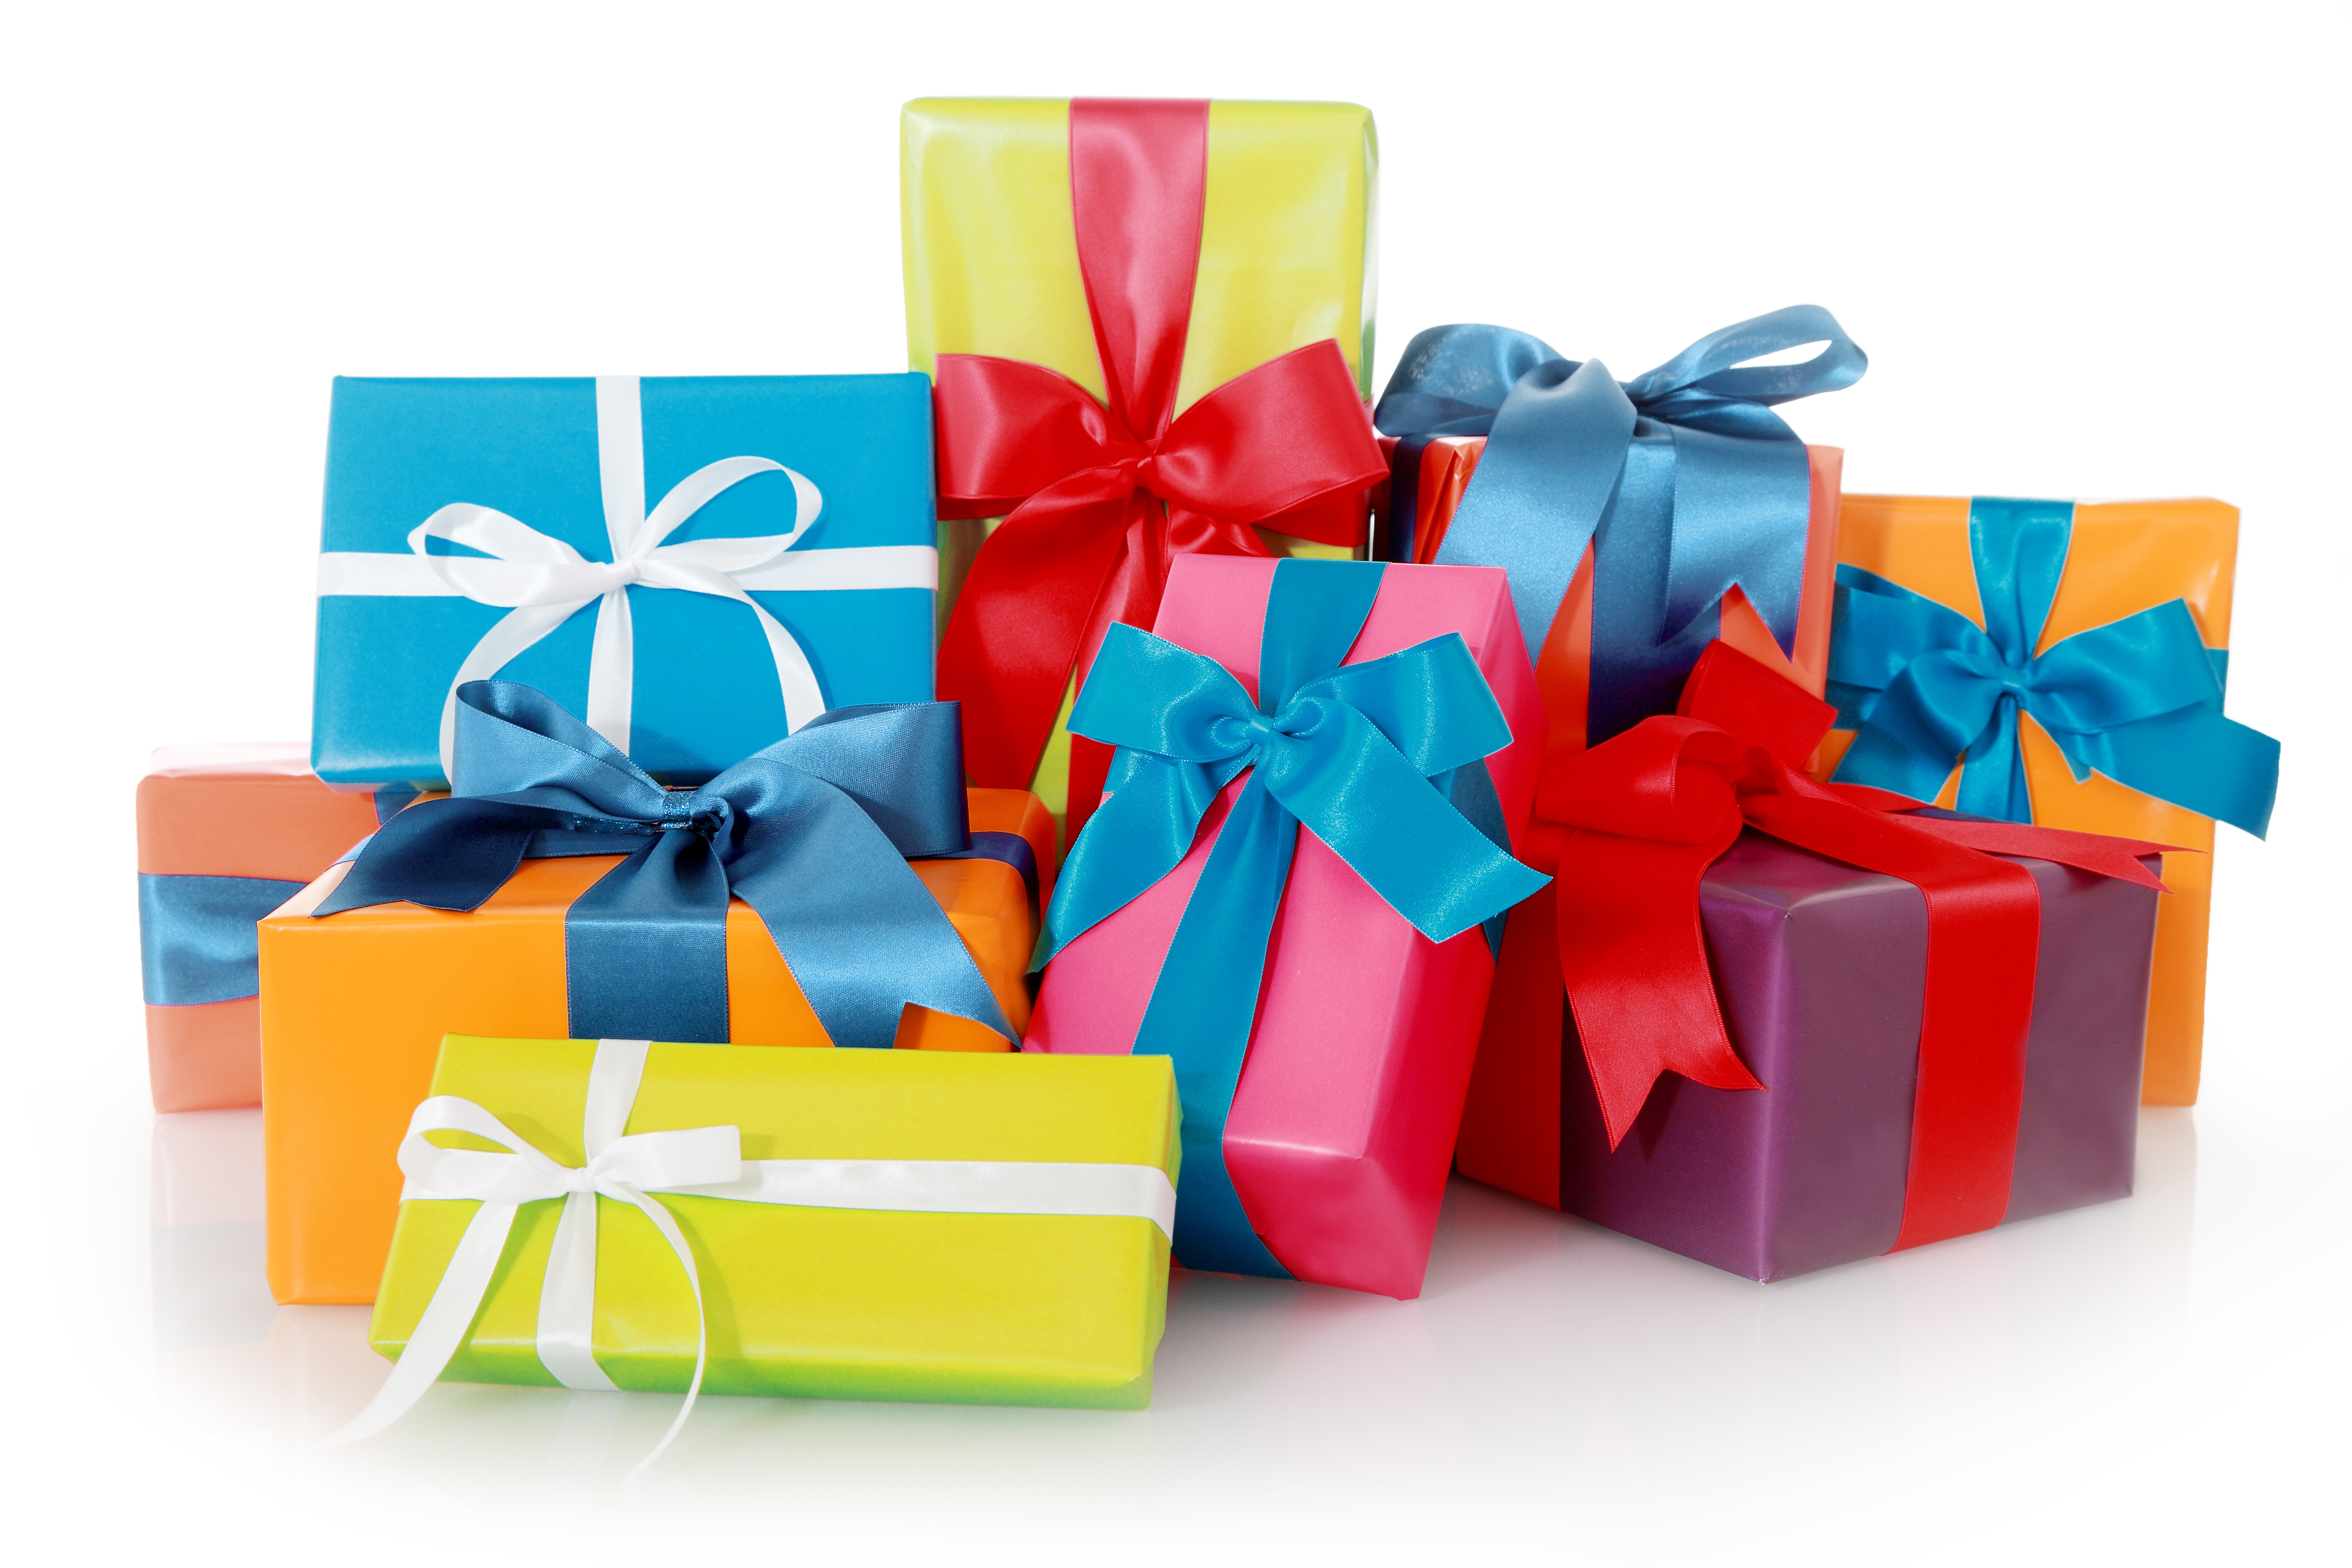 beaucoup de cadeaux d'anniversaire | Source : Shutterstock